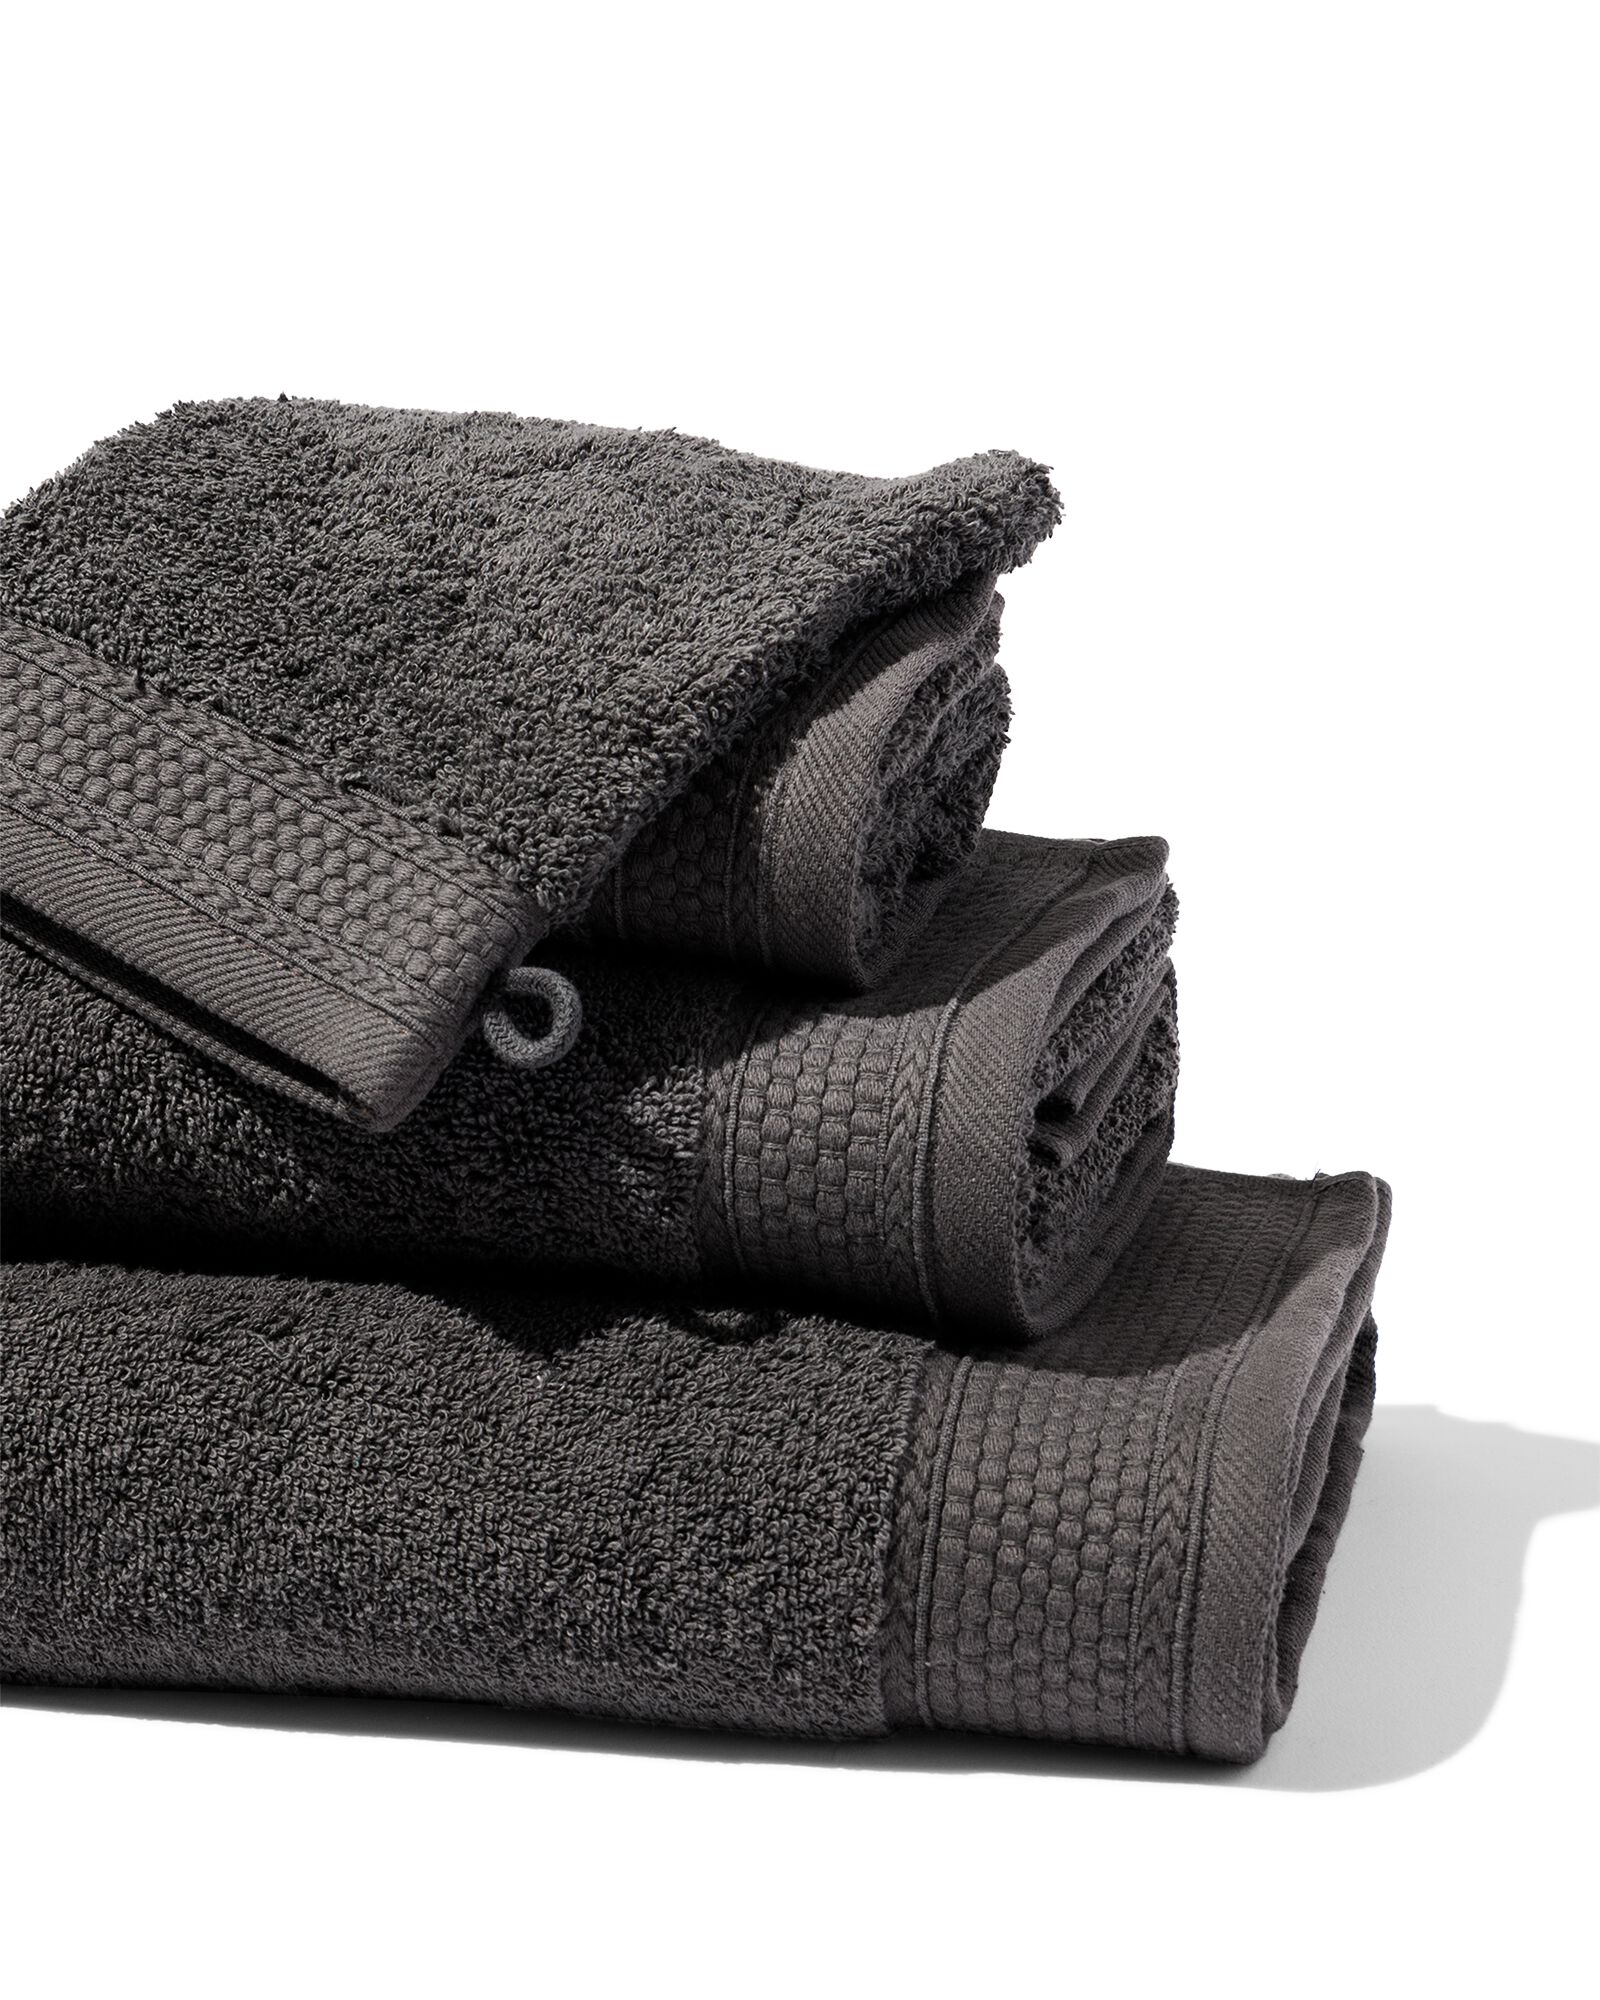 hema serviettes de bain - qualité hôtel très épaisse gris foncé (gris foncé)